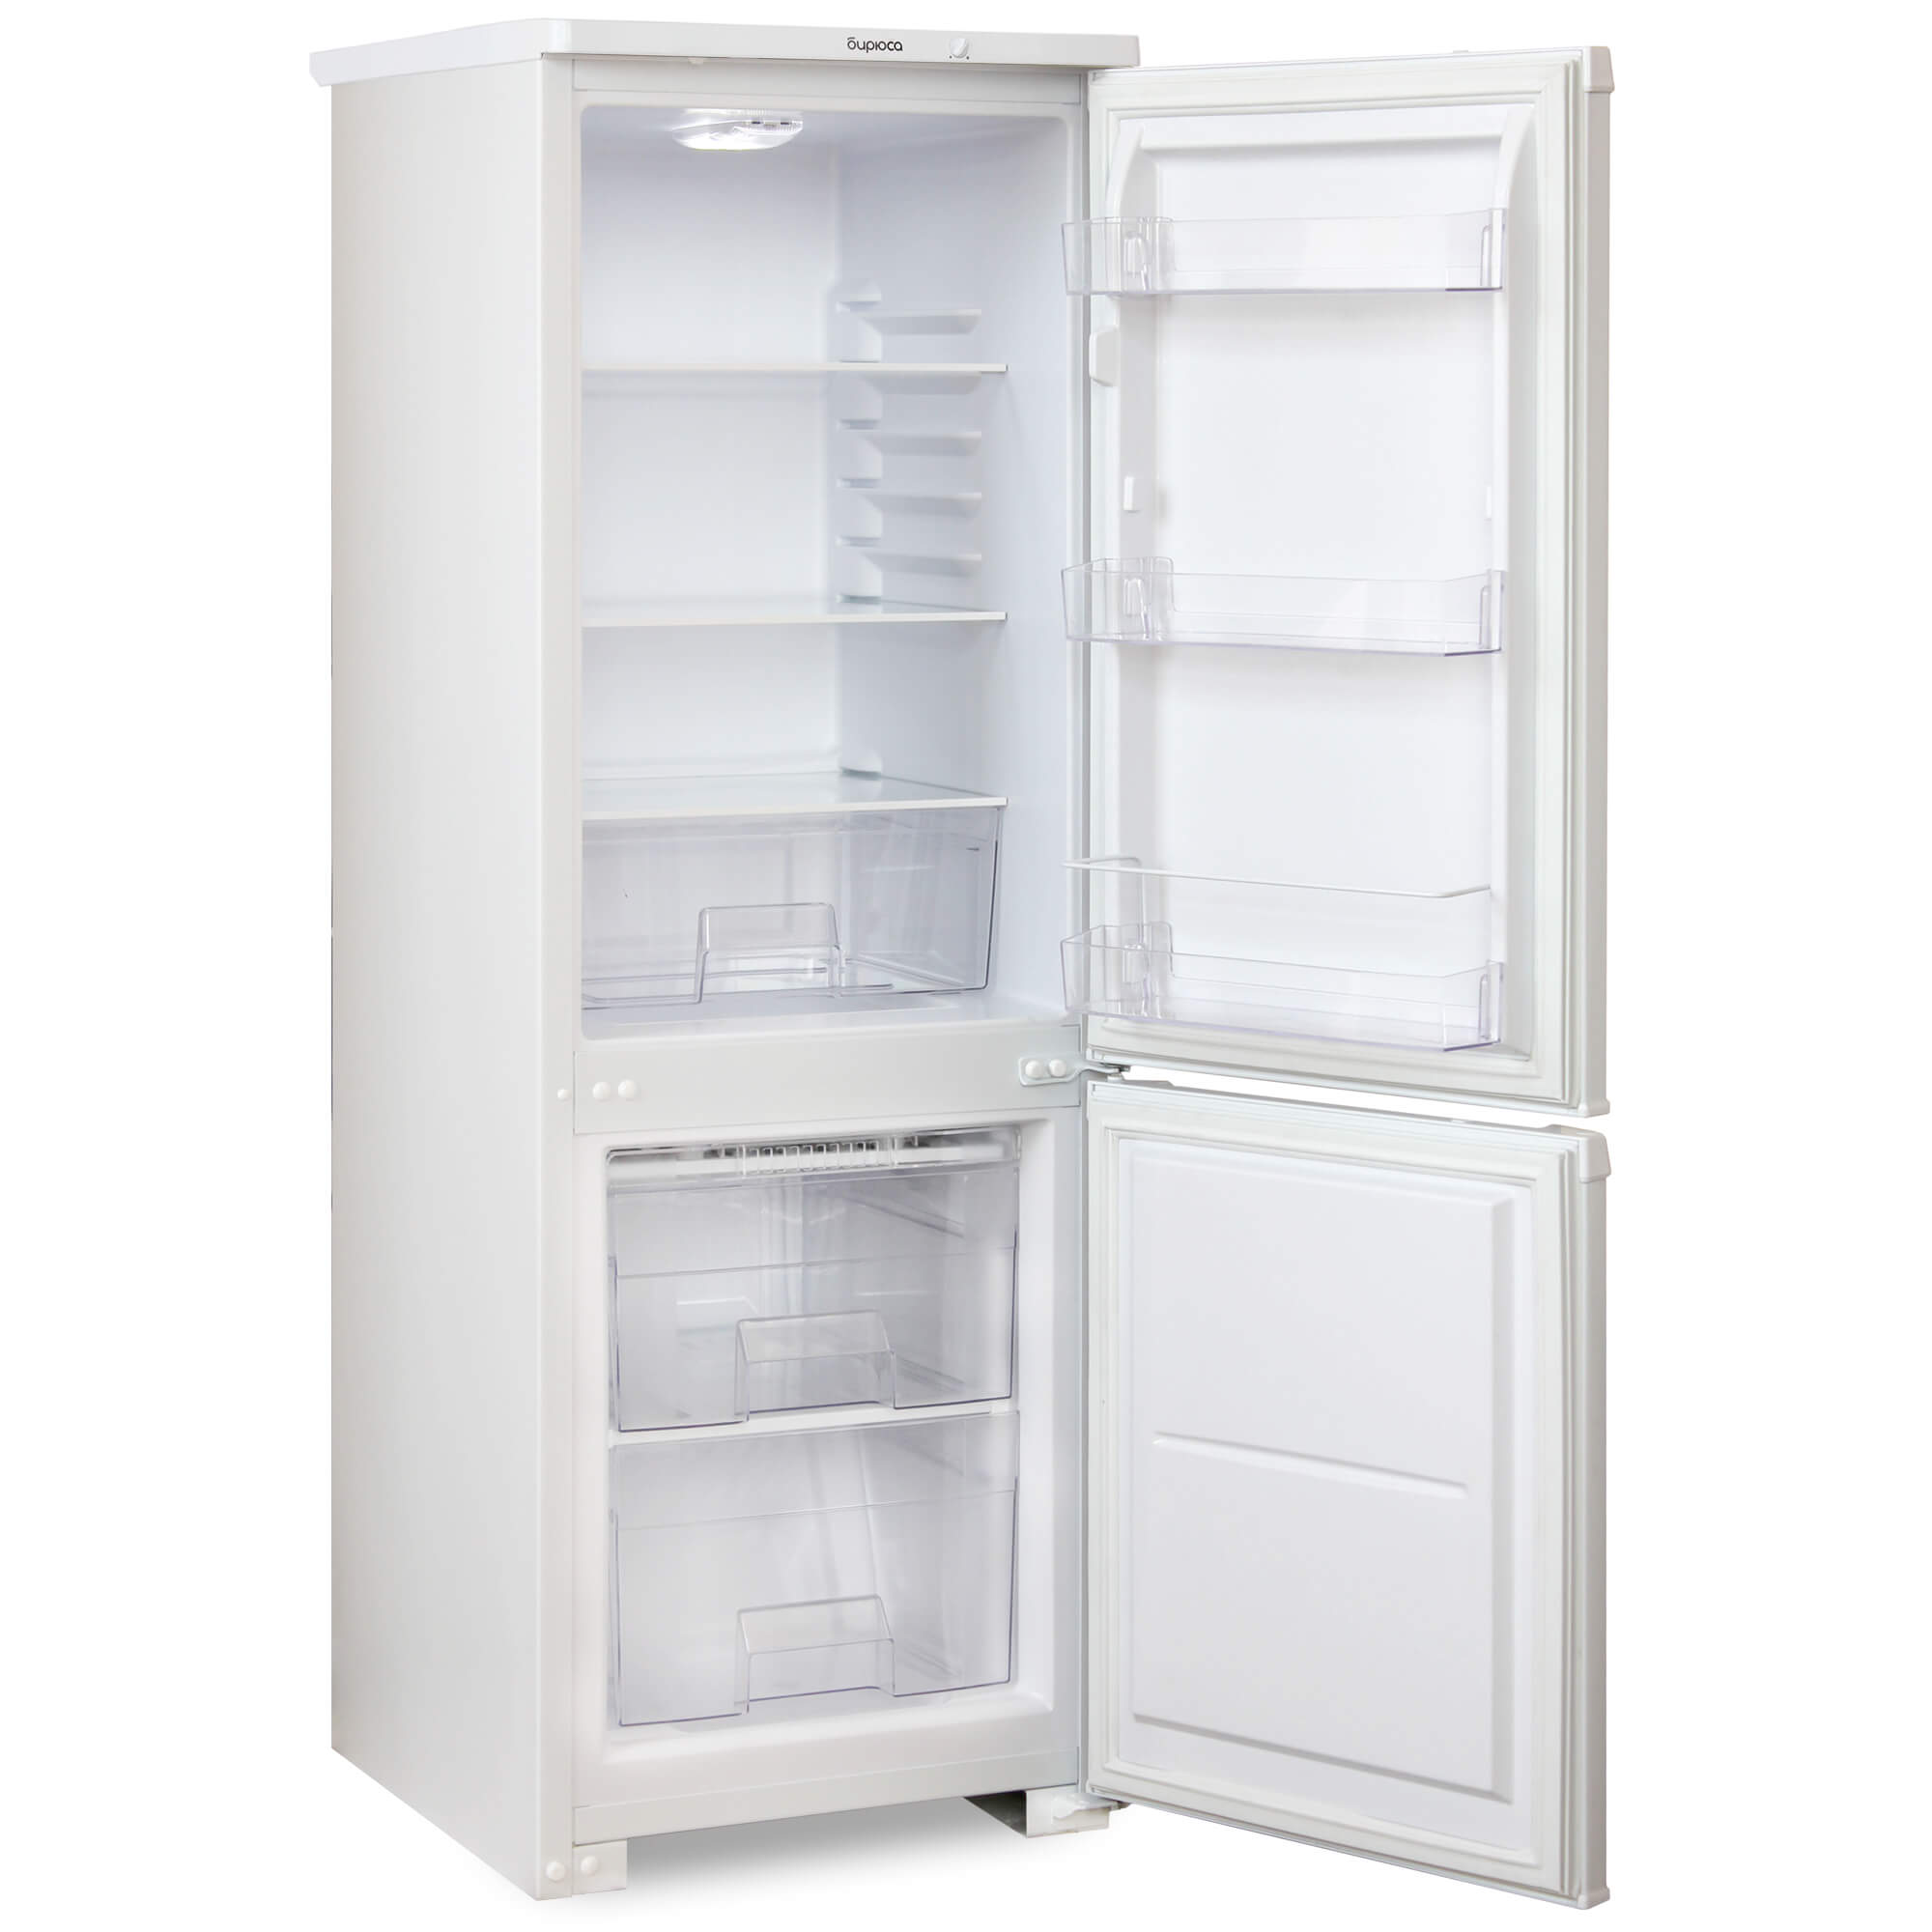 Где купить холодильник индезит. Холодильник Stinol STS 185 белый. Холодильник Stinol STS 167. Whirlpool WTNF 902 W. Индезит SB200.027 холодильник.